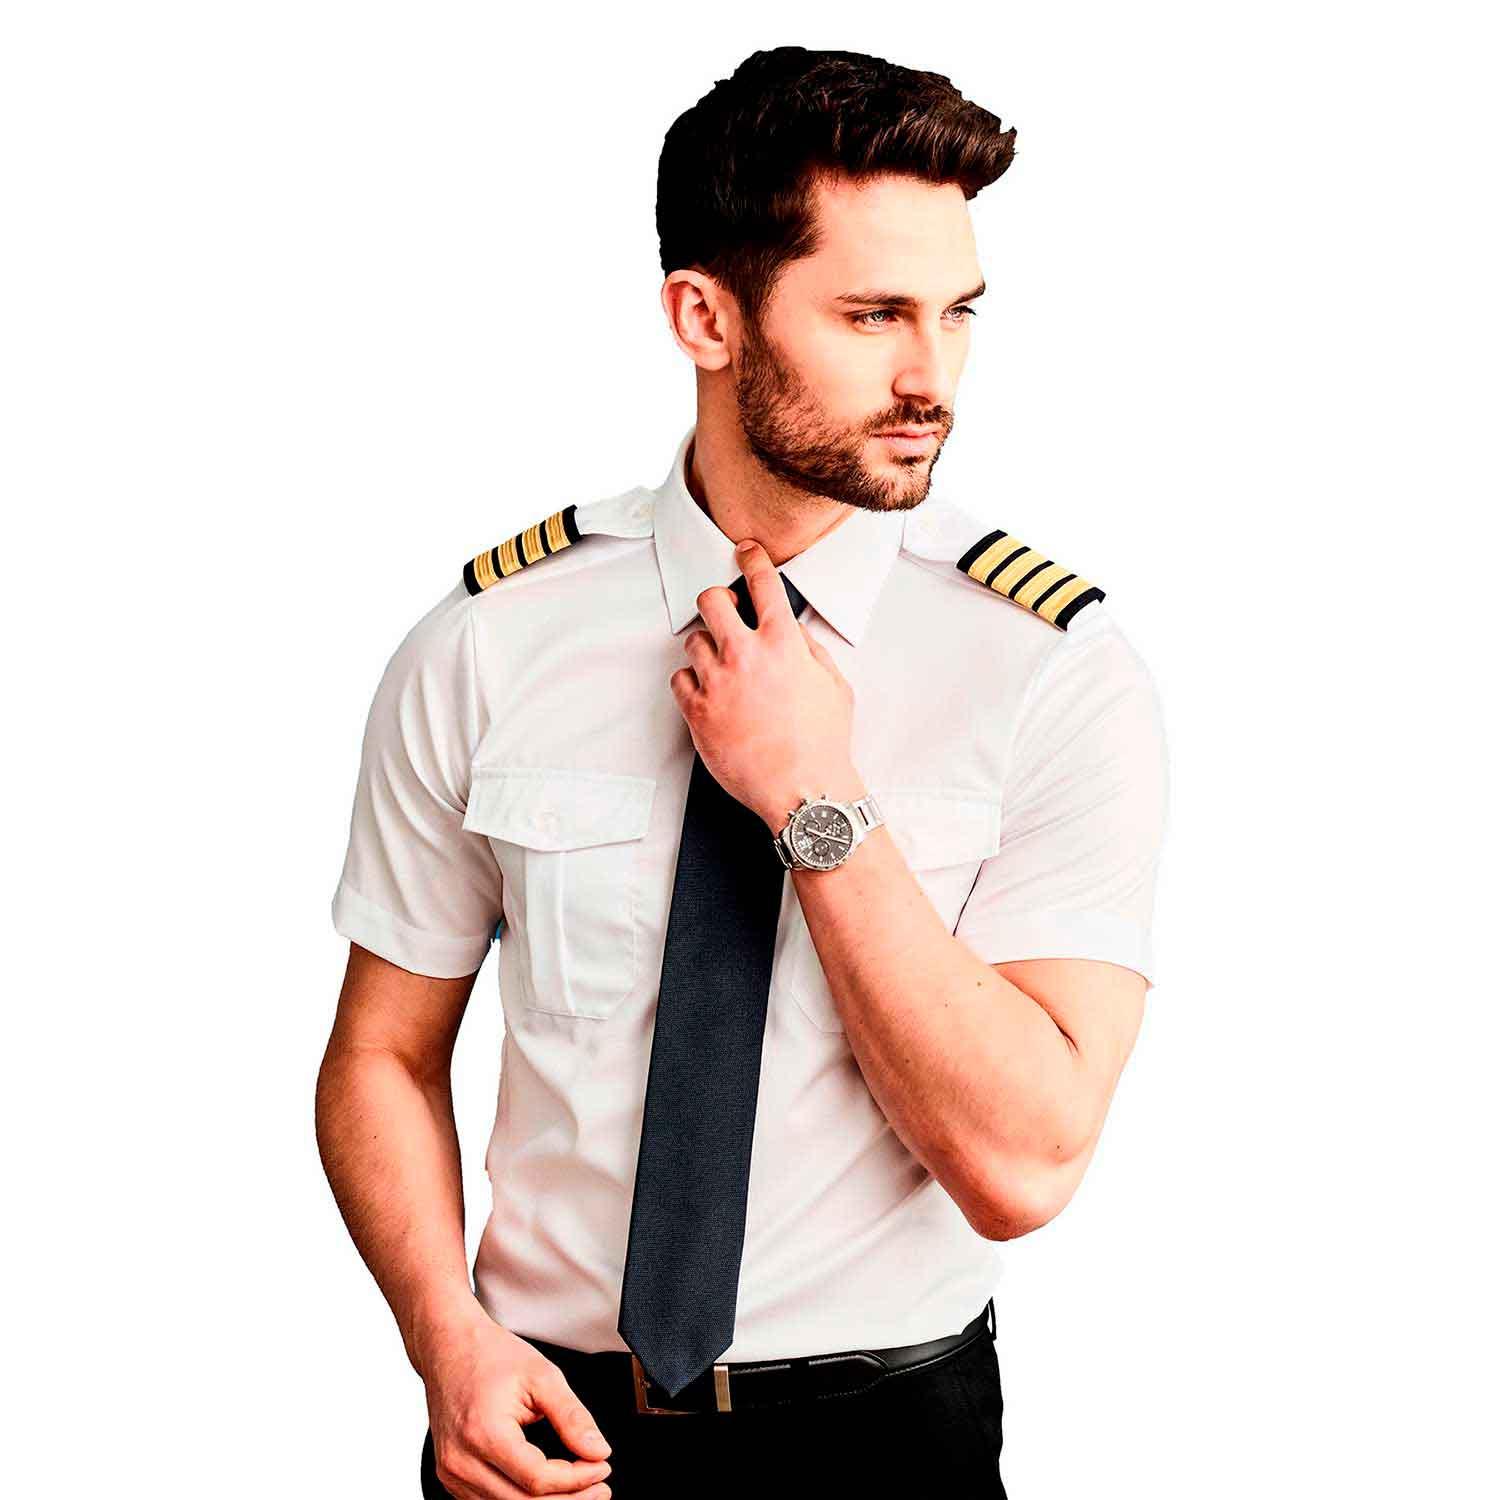 Olino Pilot uniform shirt